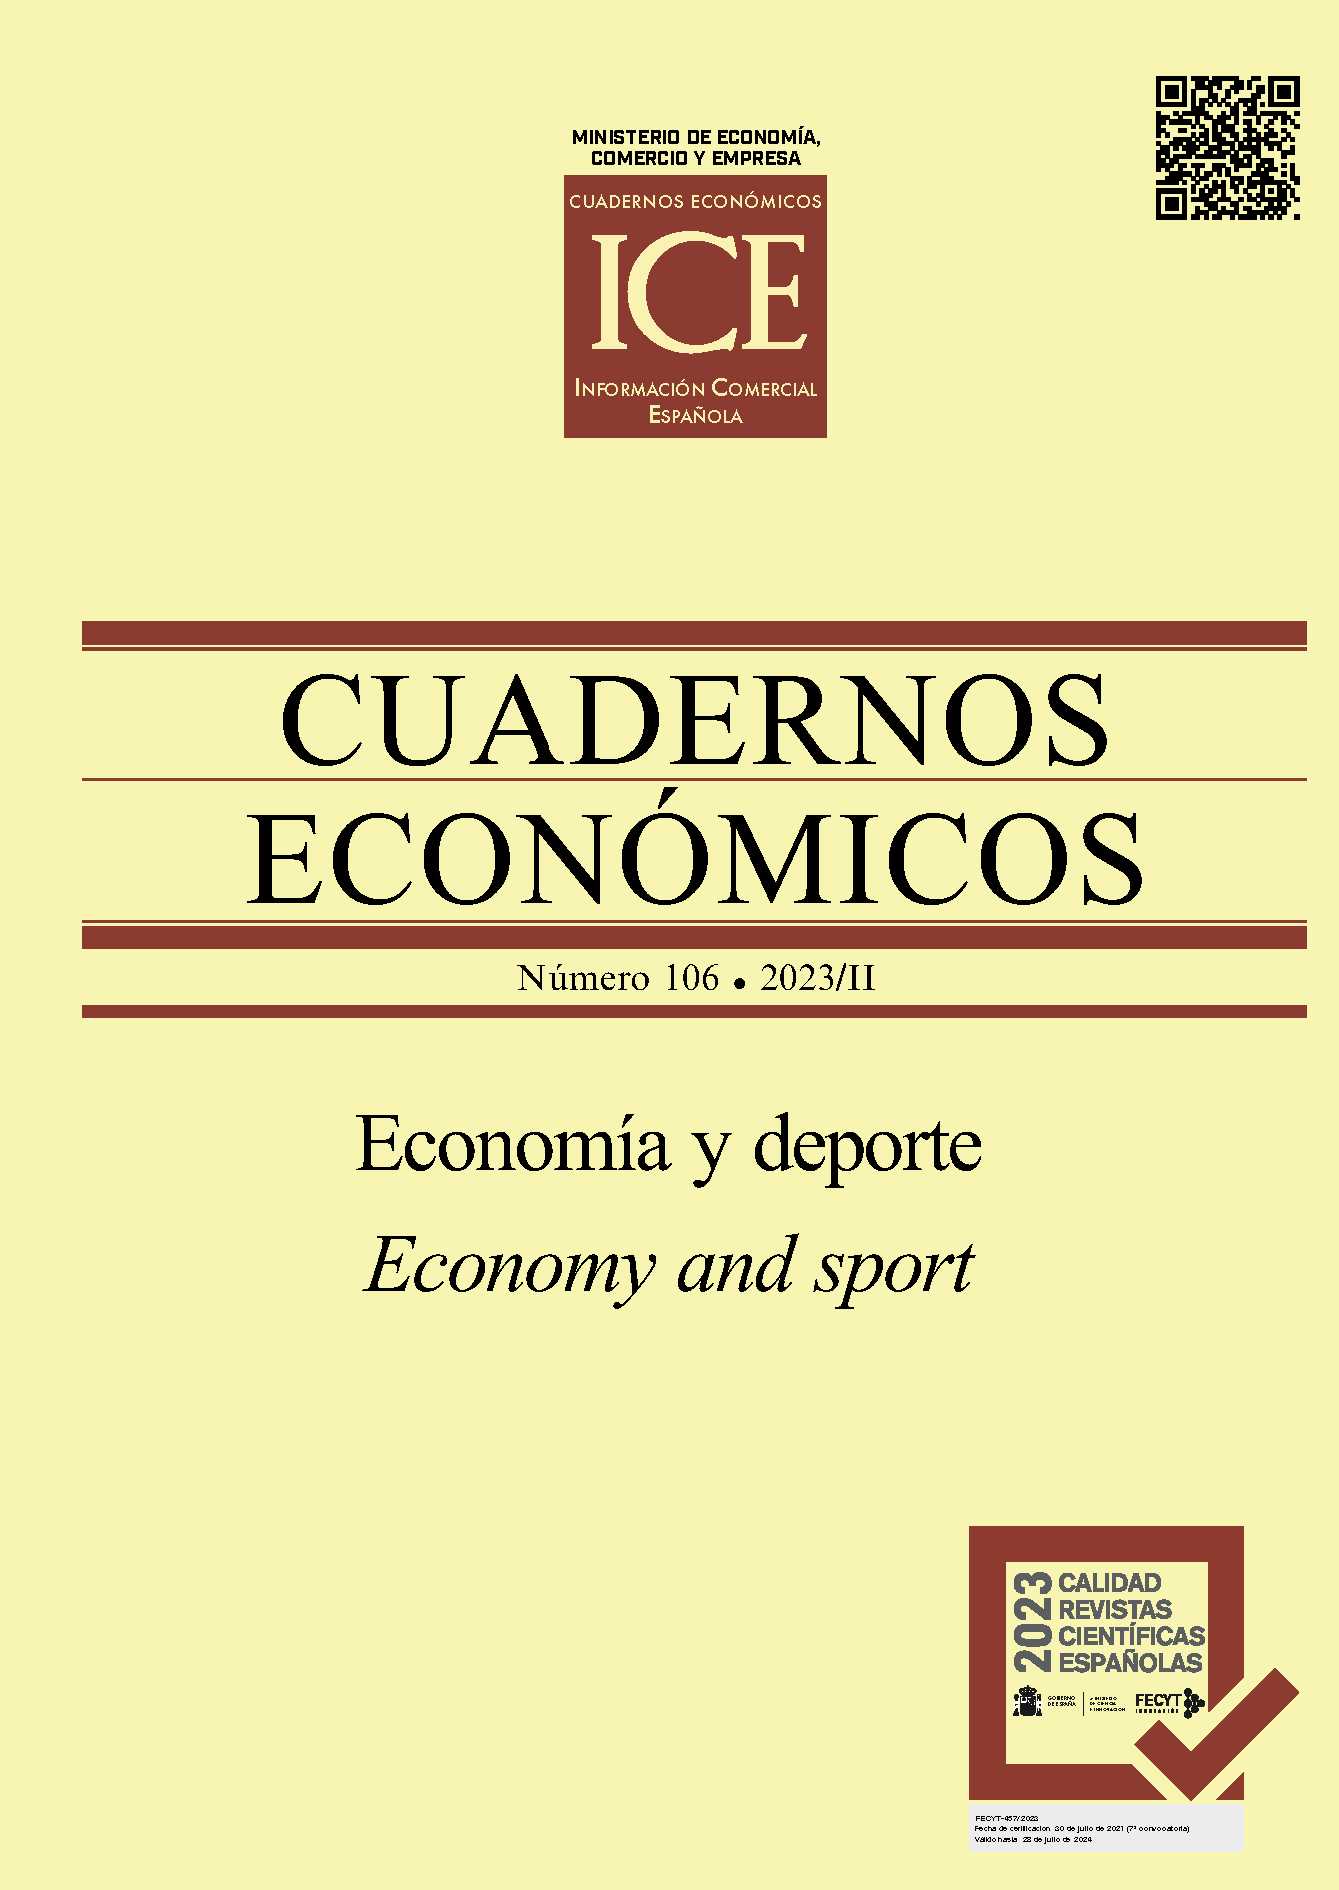 Cuadernos Económicos de ICE